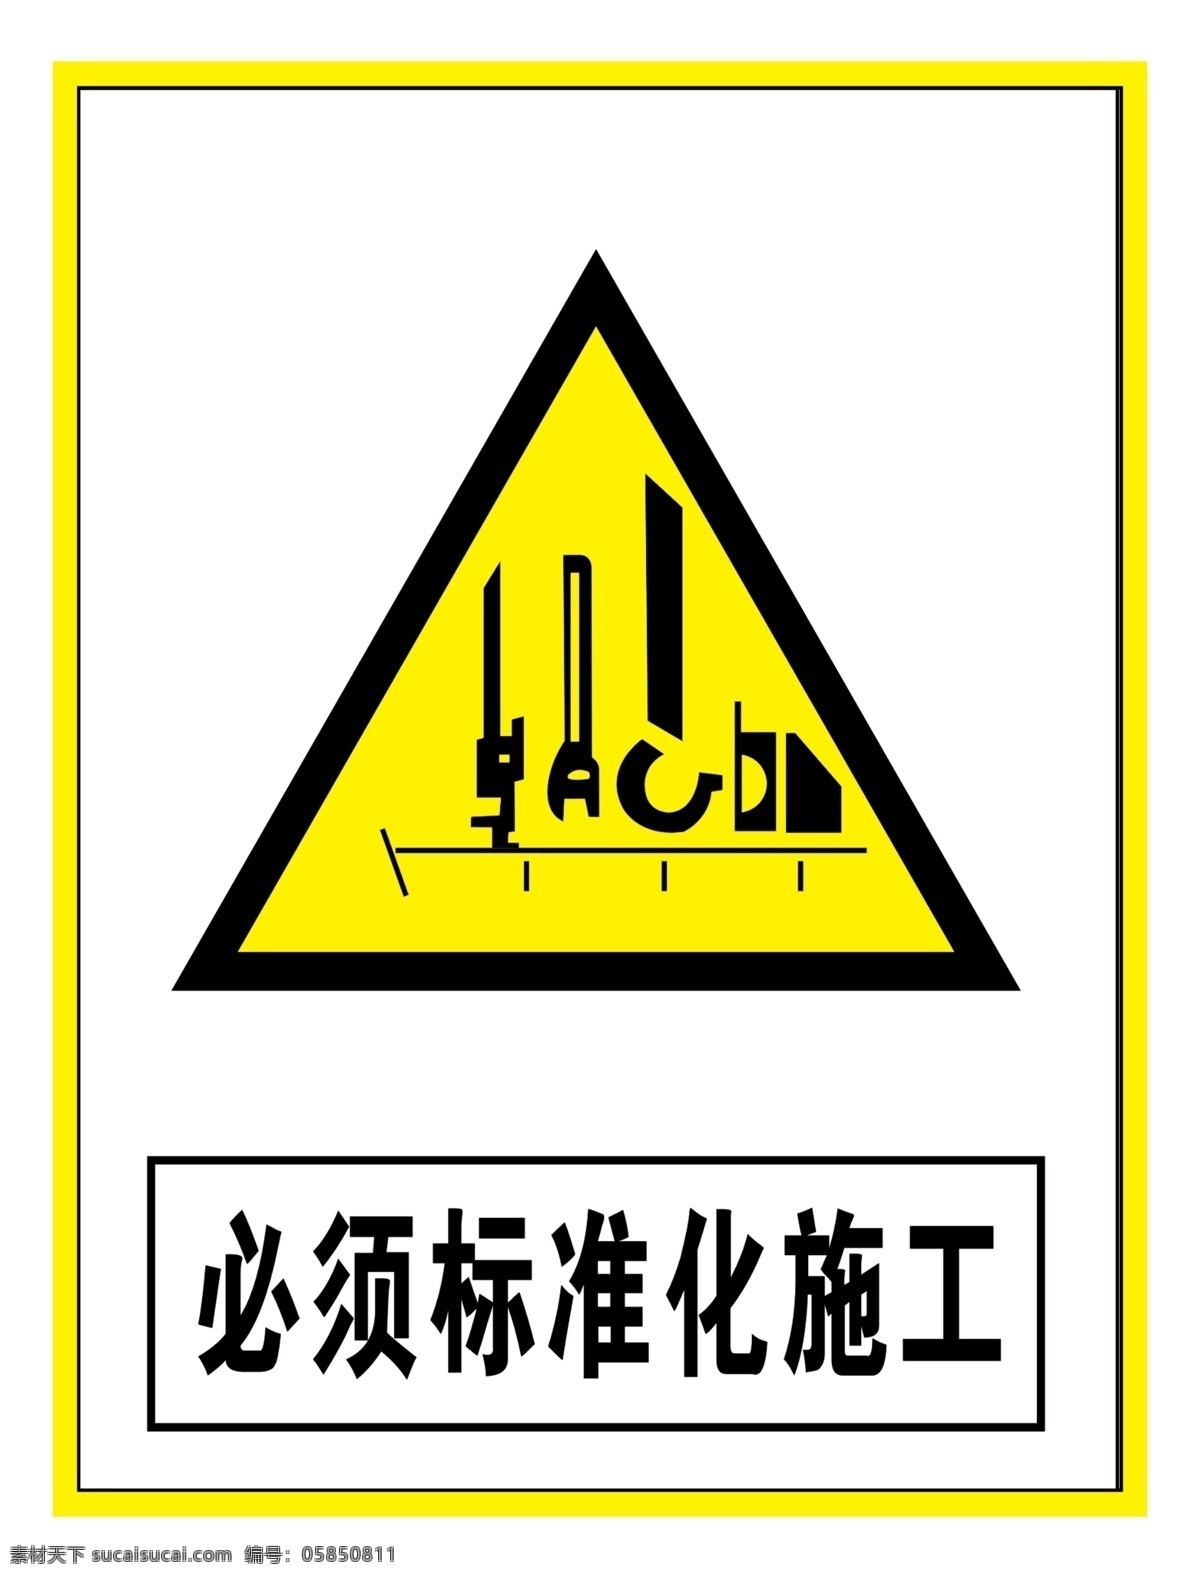 警示 标志 必须 标准化 施工 警告标识 警告标志 警告禁止标志 警示标识 警示标志 警示标志安全 当心标志 必须标准施工